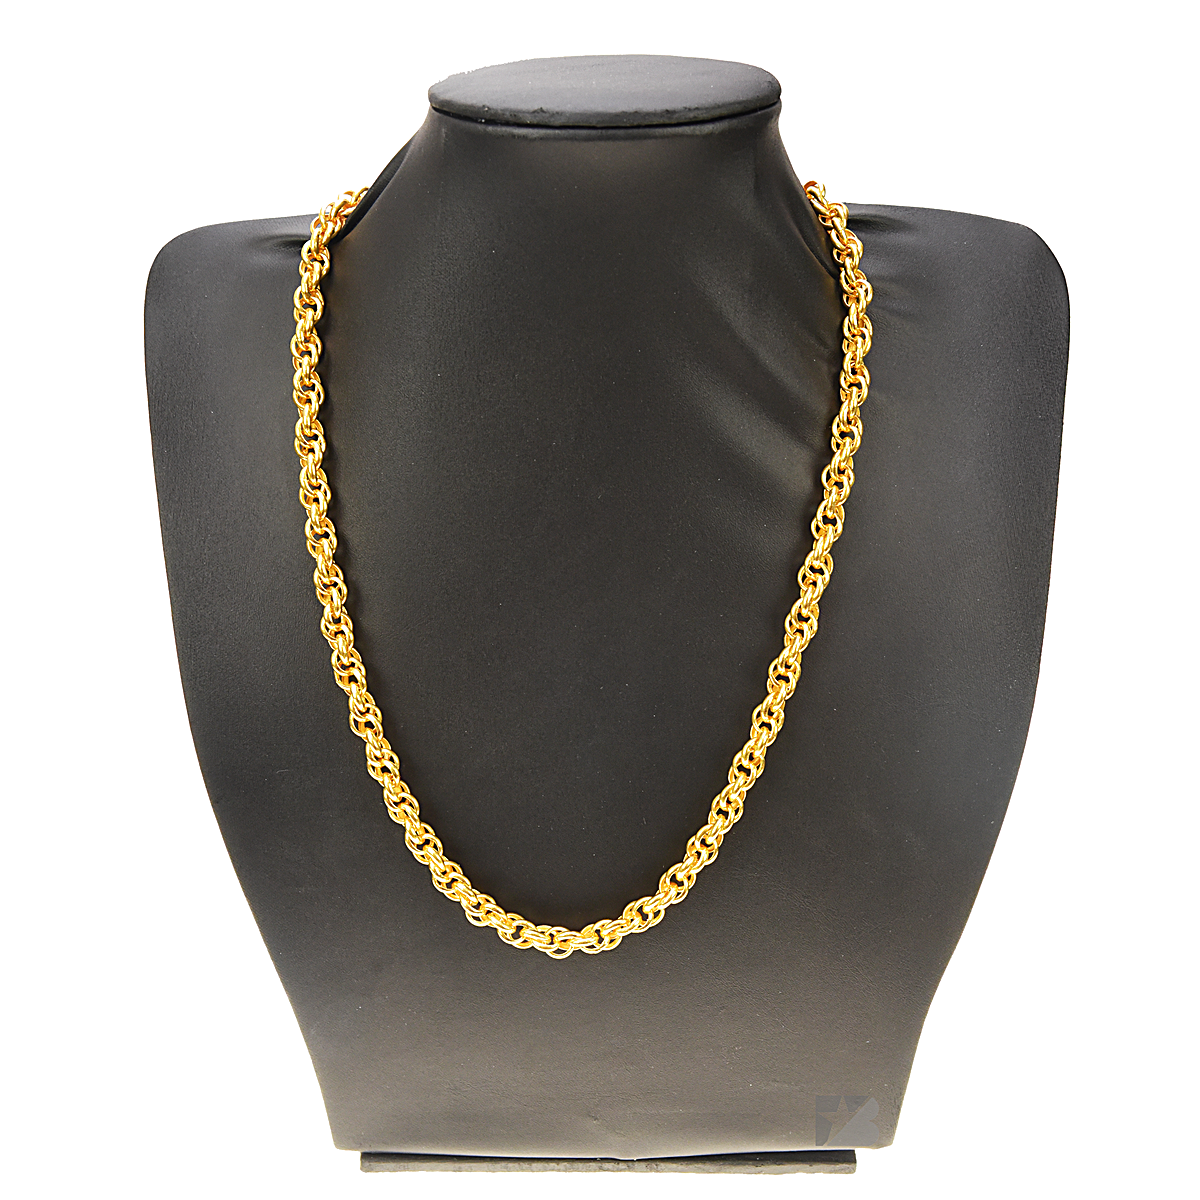 Gold Necklace - 24 karat - 128.91 gram fine gold weight